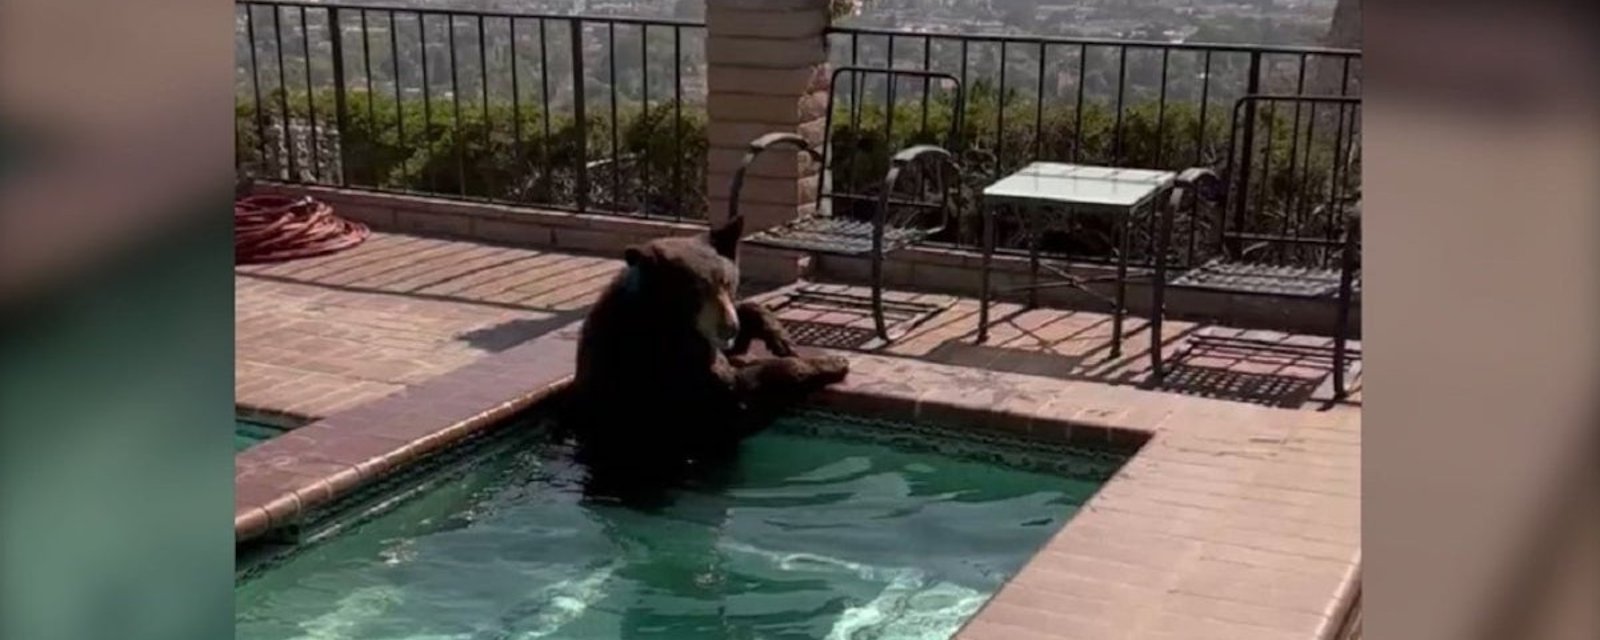 Un ours s’est offert une petite pause… dans un jacuzzi!